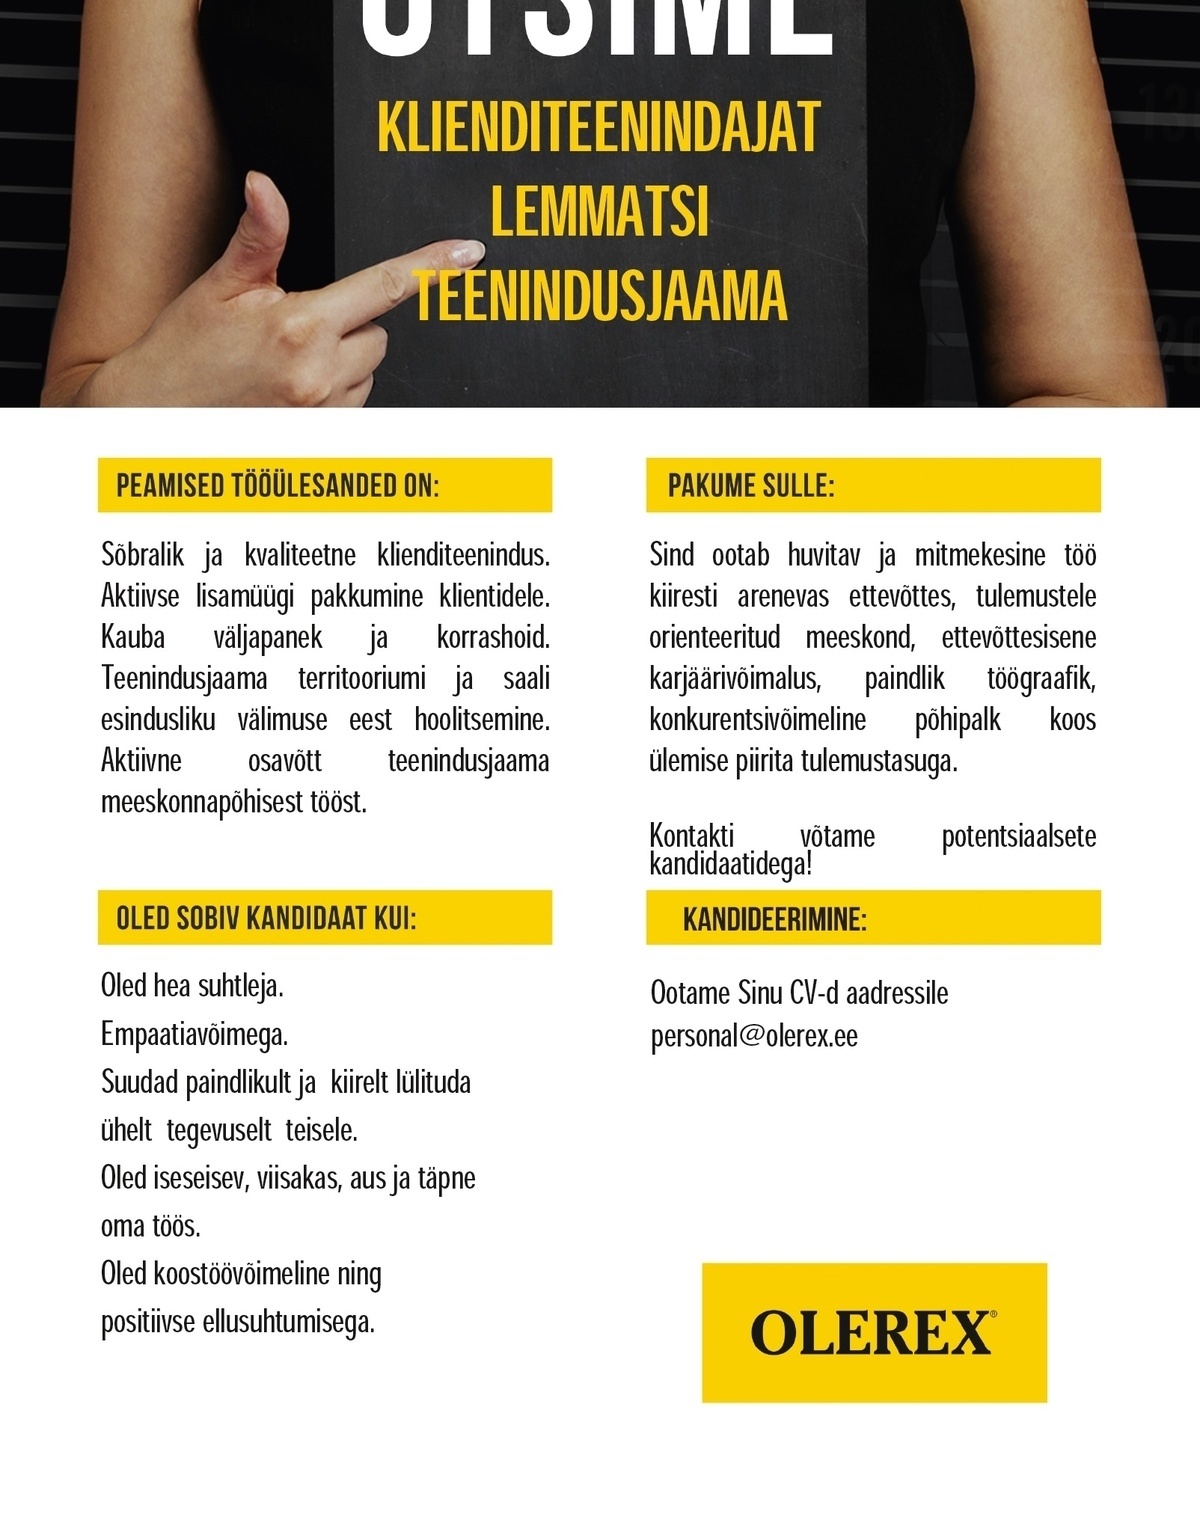 Olerex AS Klienditeenindaja Lemmatsi teenindusjaama